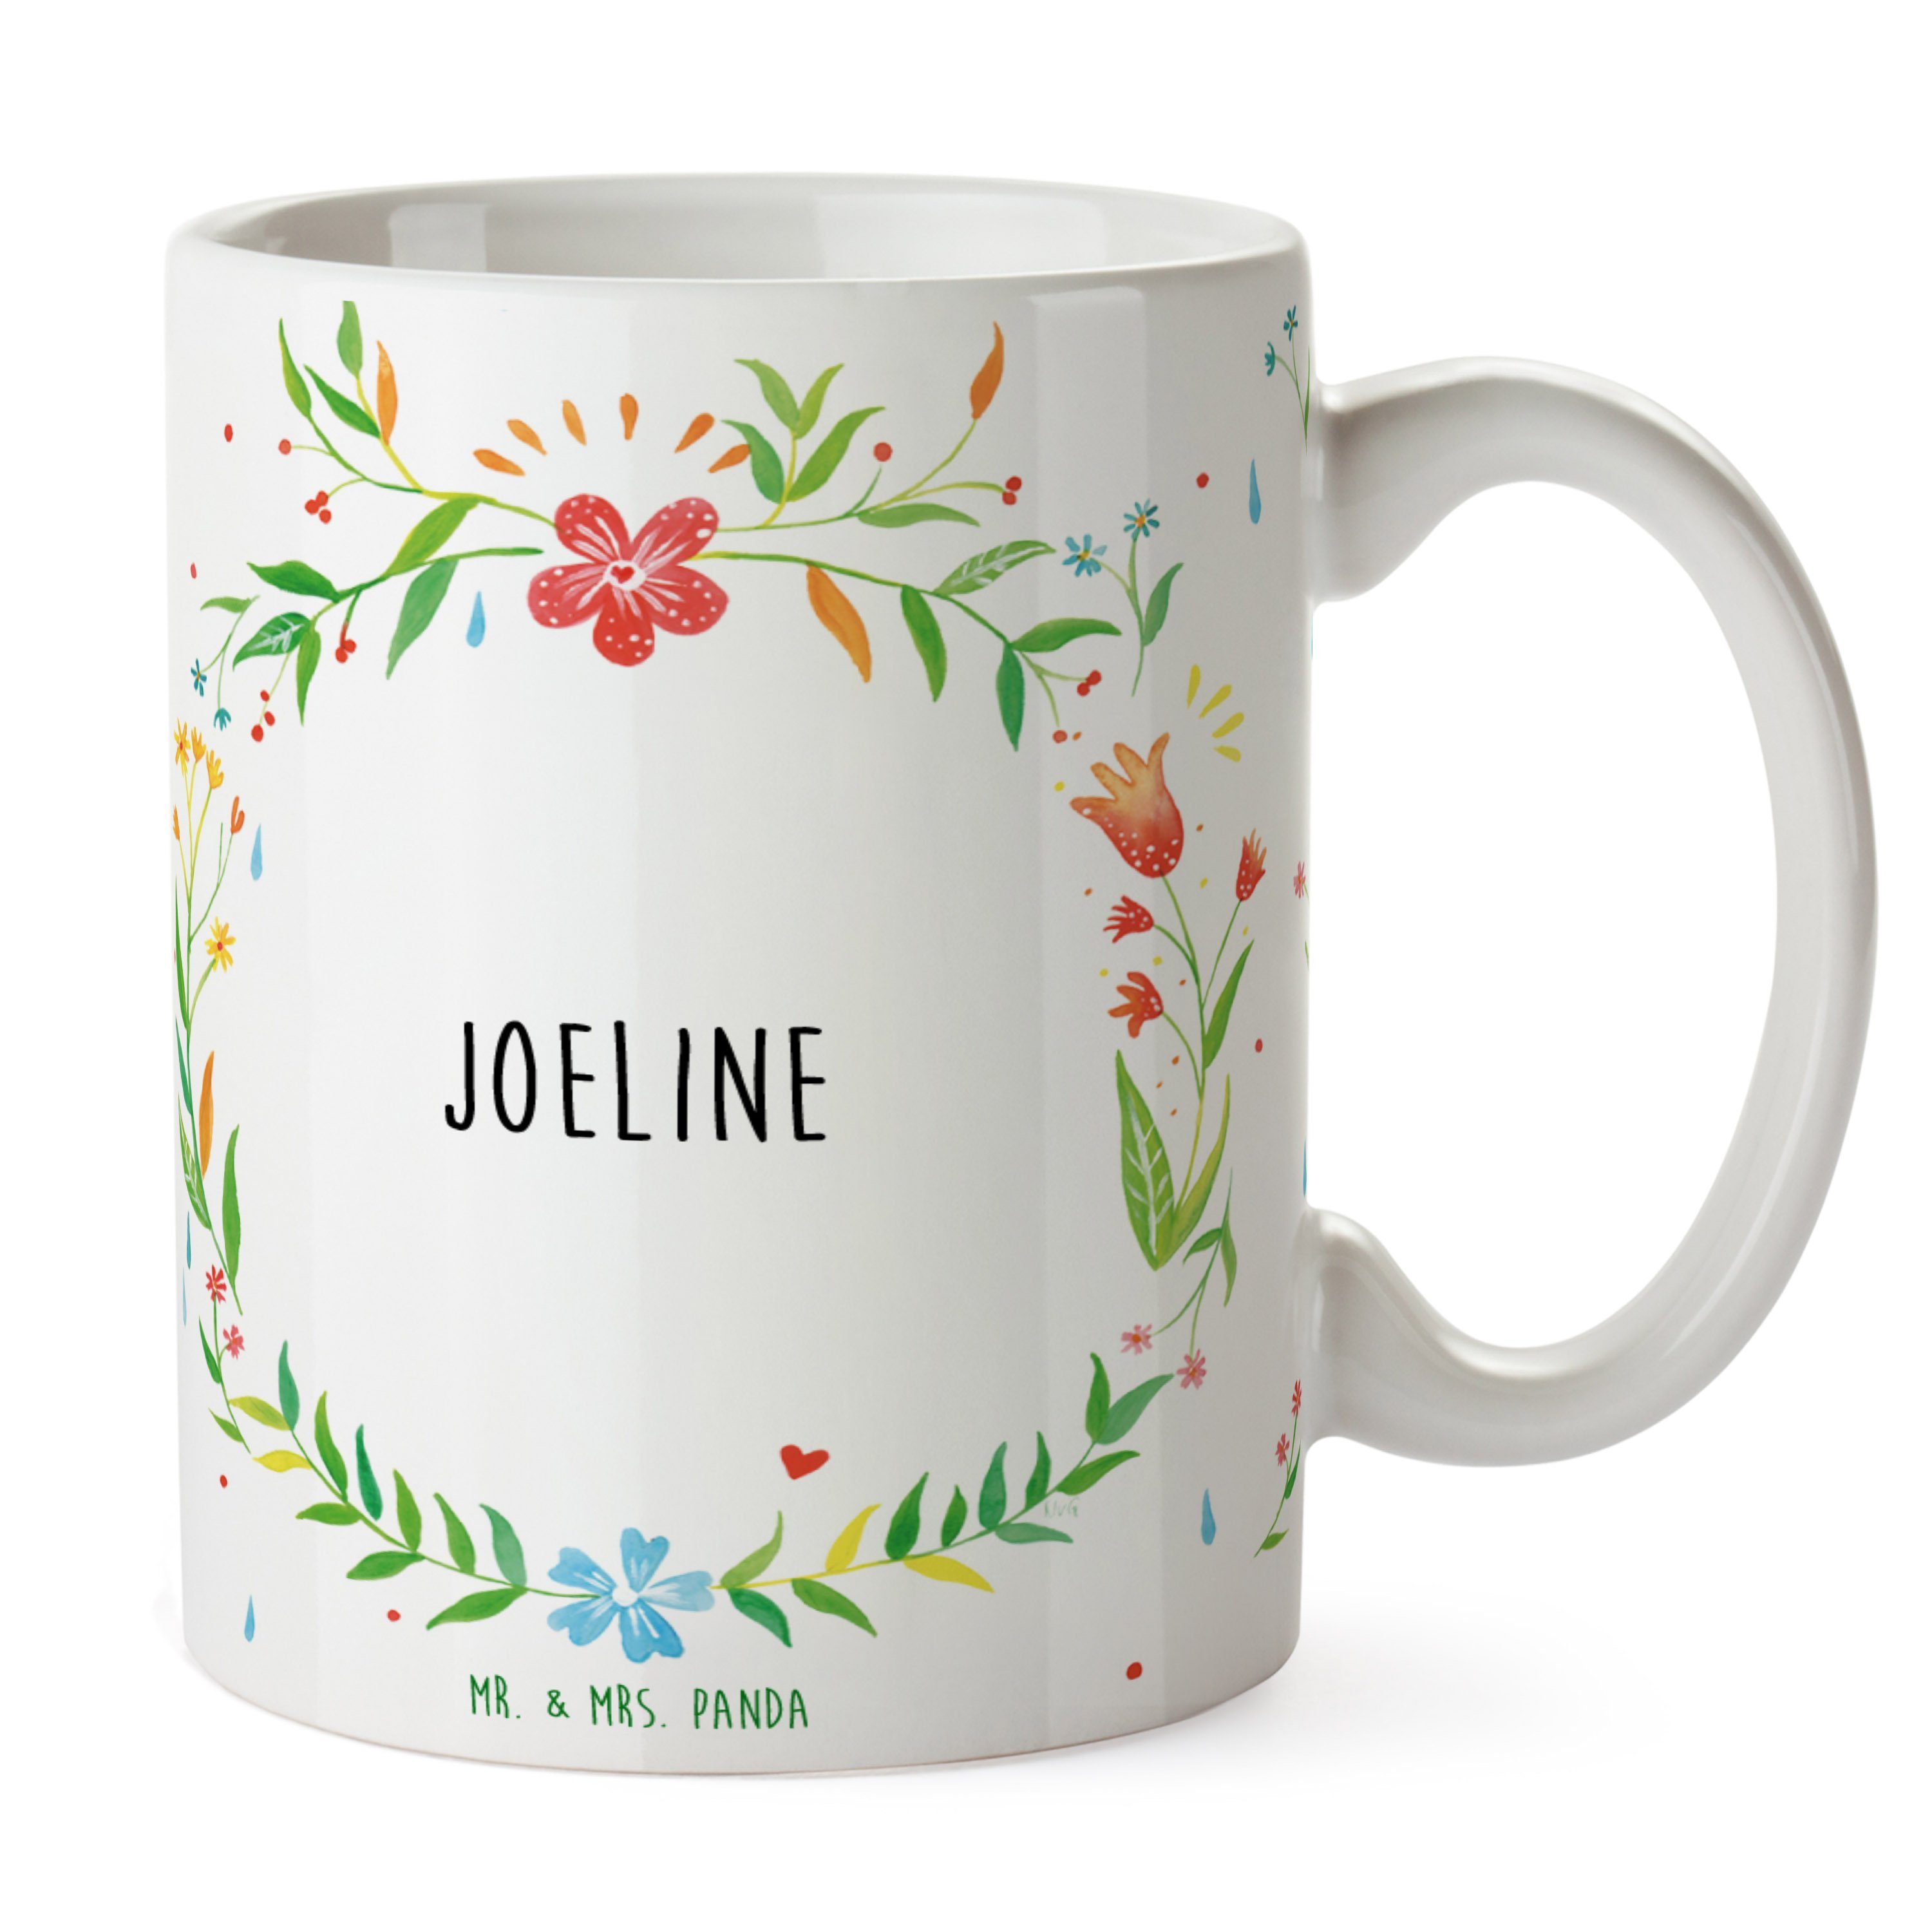 Joeline Tasse, Geschenk Tasse K, Tasse, - & Geschenk, Keramik Tasse Sprüche, Mrs. Mr. Panda Teetasse,